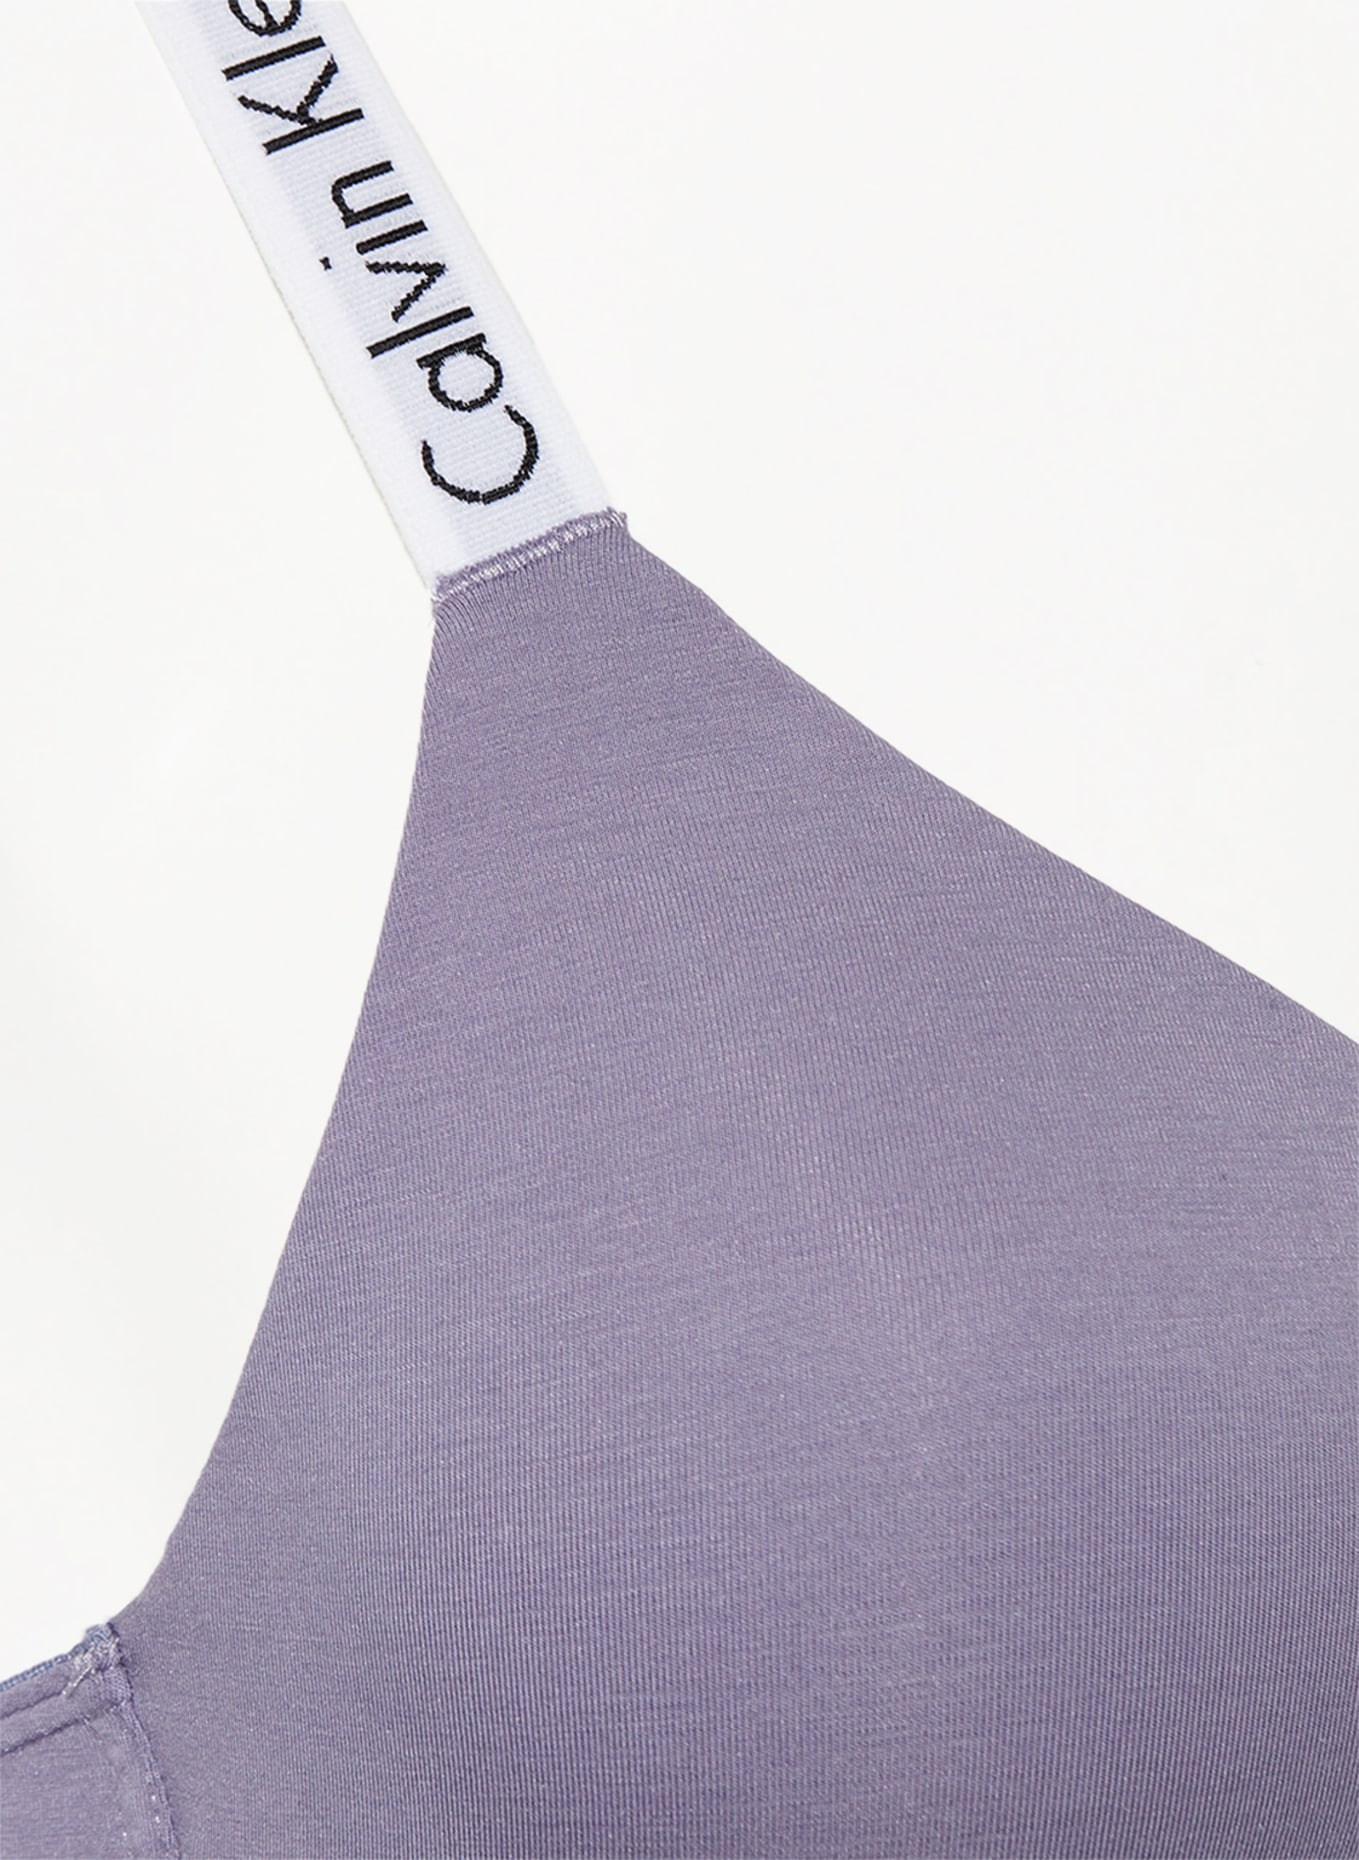 Calvin Klein Bralette MODERN COTTON in light purple